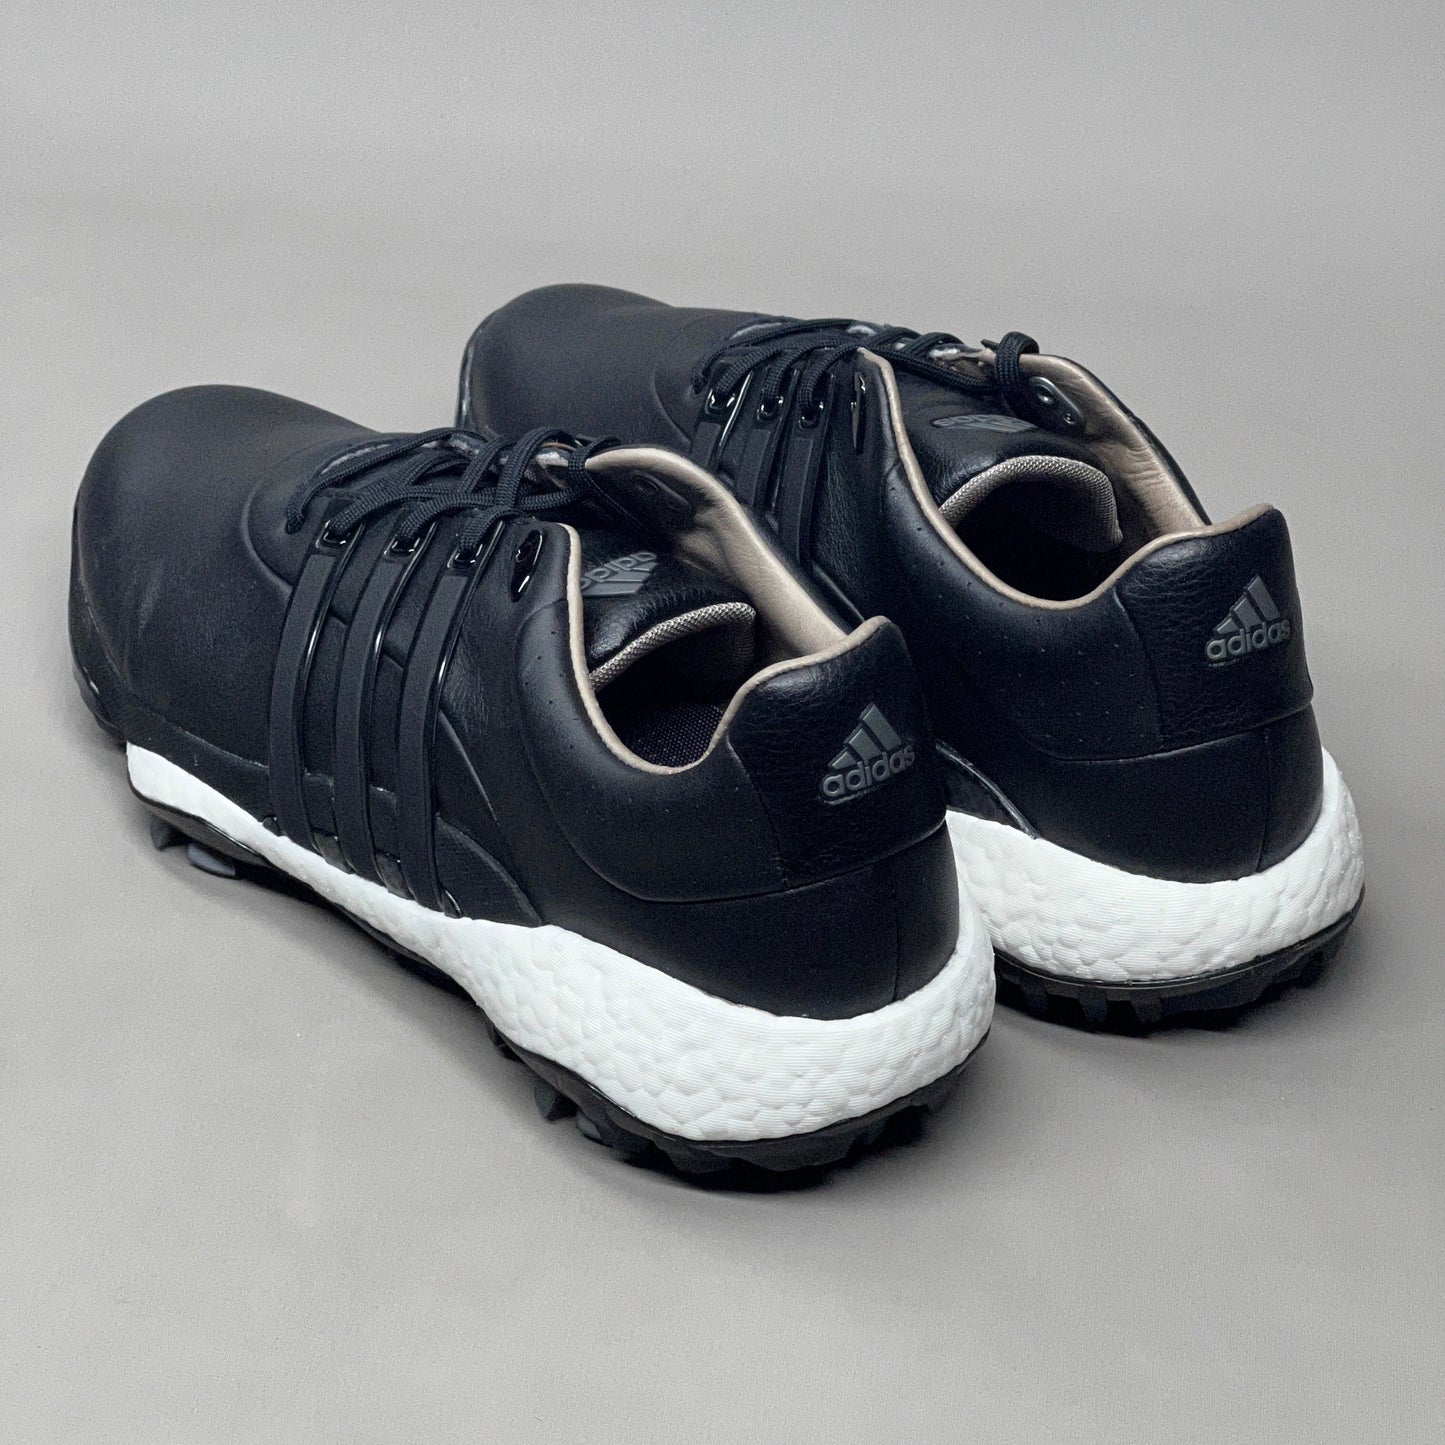 ADIDAS Golf Shoes TOUR360 22 Leather Men's Sz 11.5 Black / Iron Metallic GZ3158 (New)